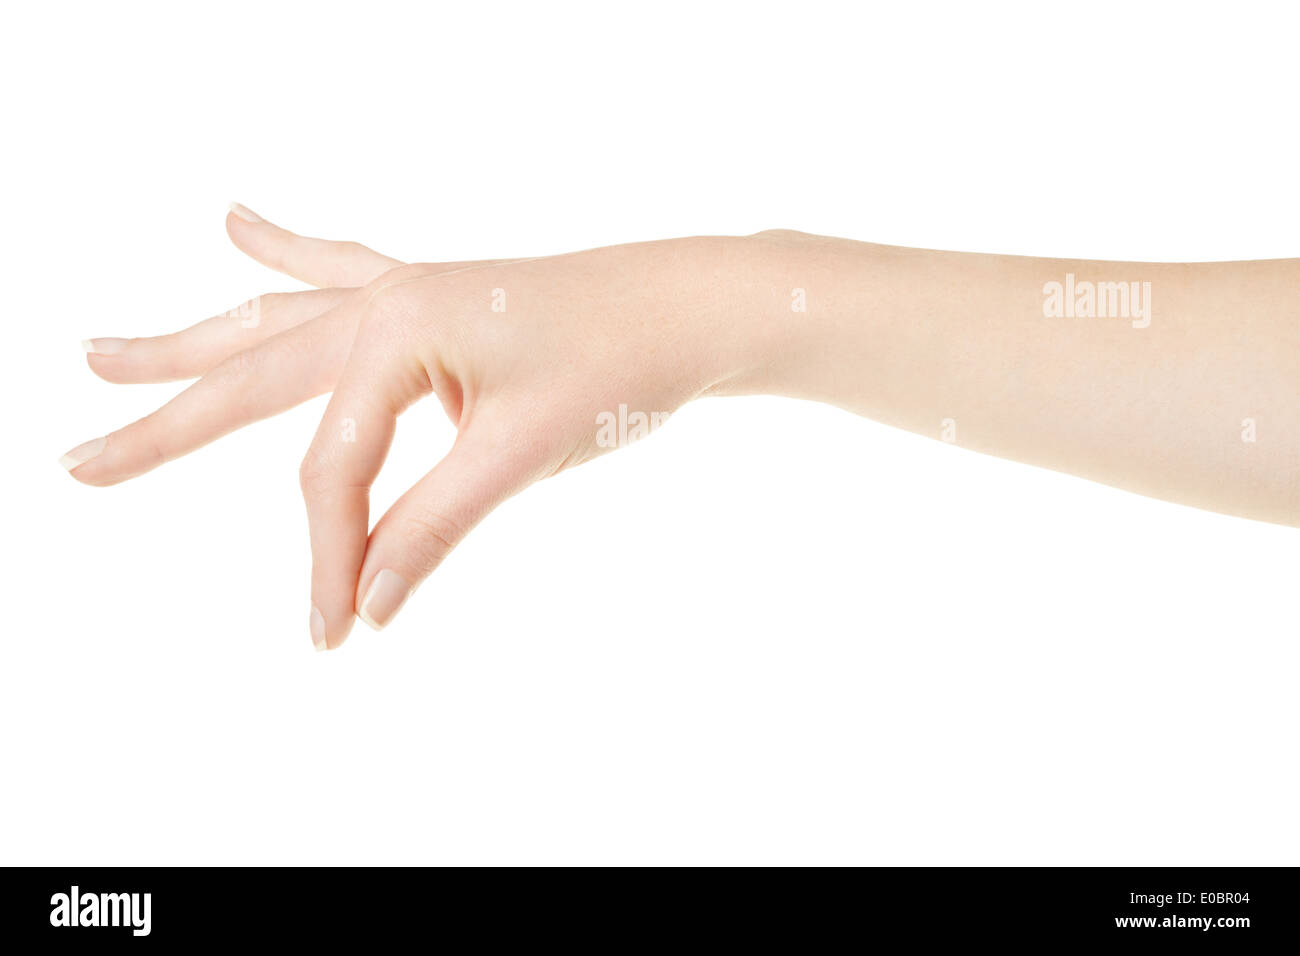 Mujer con mano manteniendo elementos de manicura Foto de stock